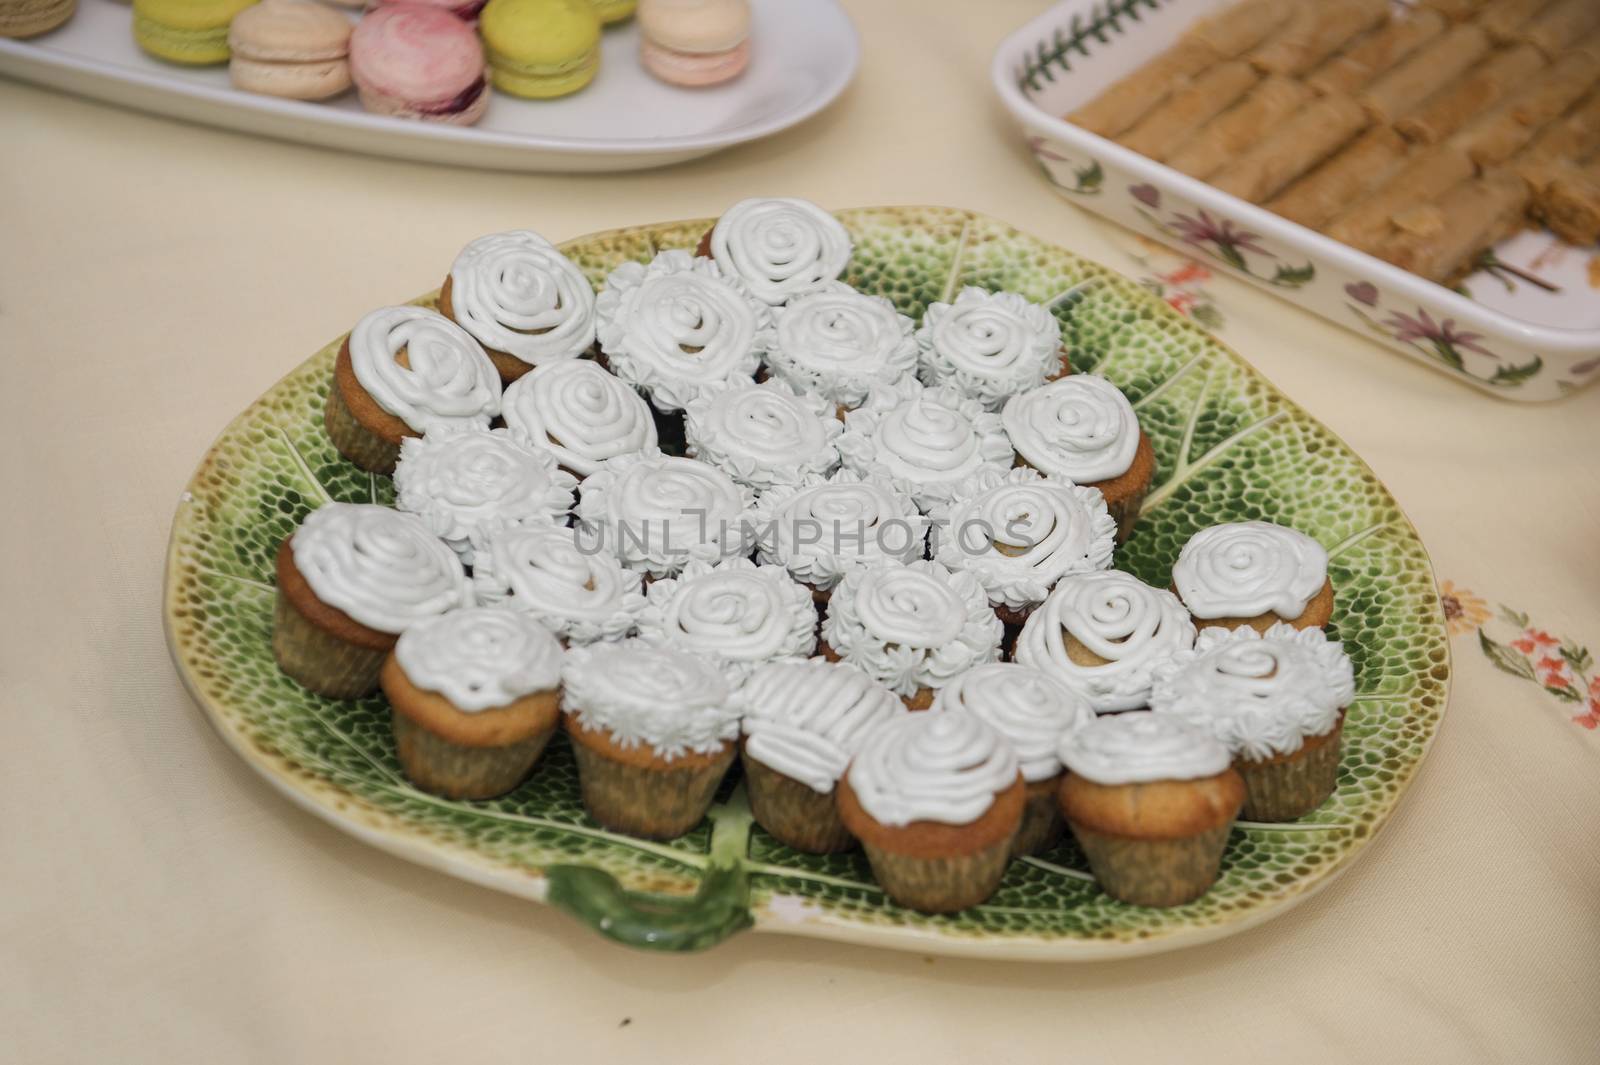 Cupcakes by pazham